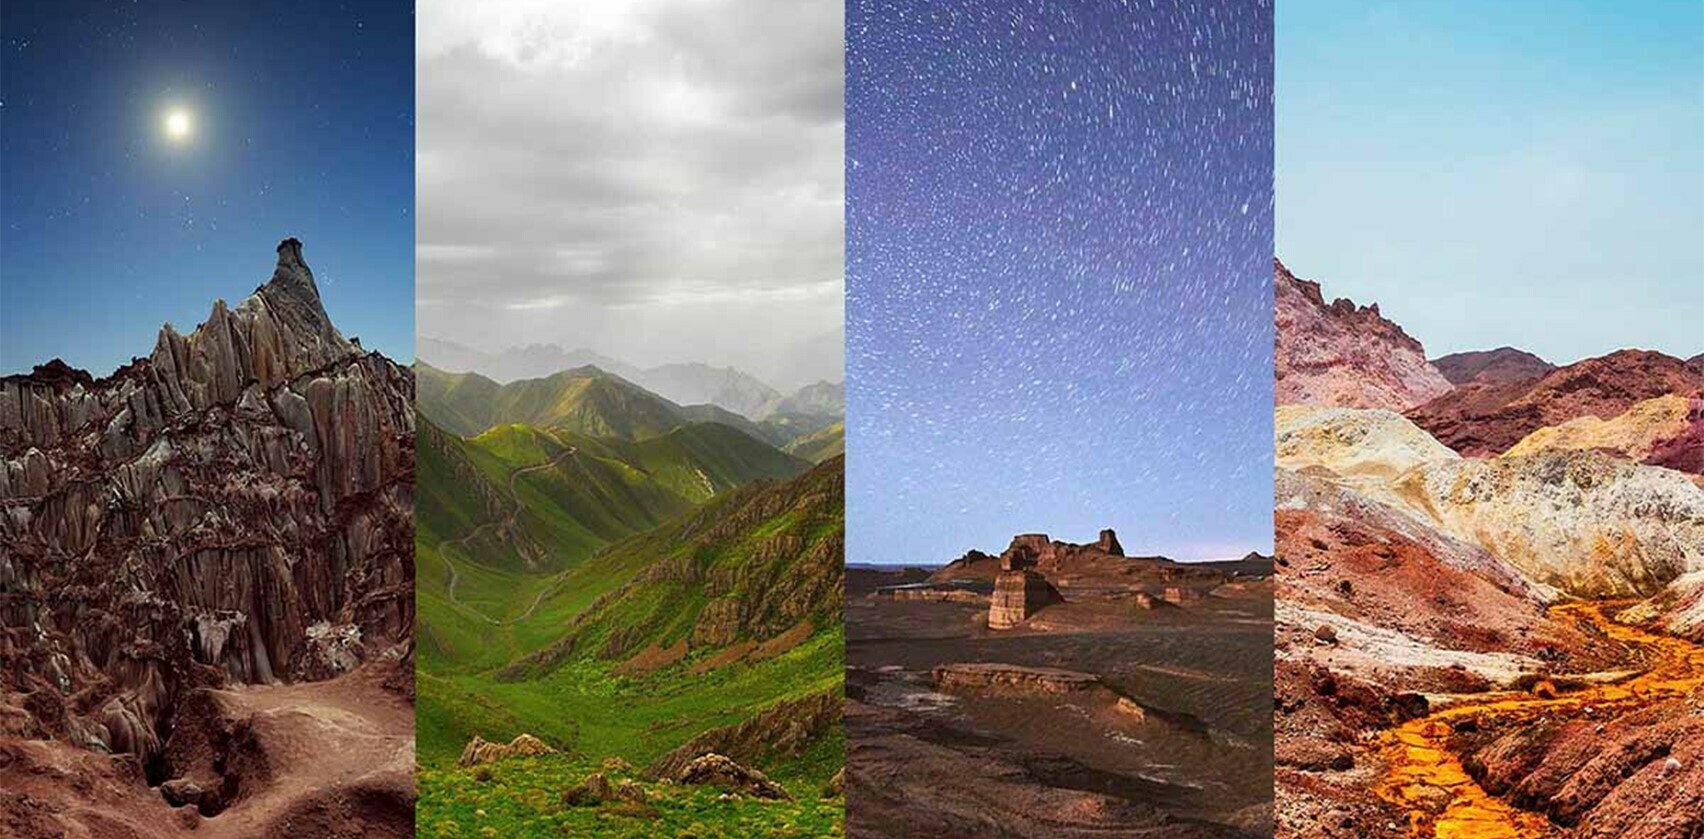  viaggia in Iran Natura meravigliosa e diversità climatica - viajar a Irán: Hermosa naturaleza y diversidad climática